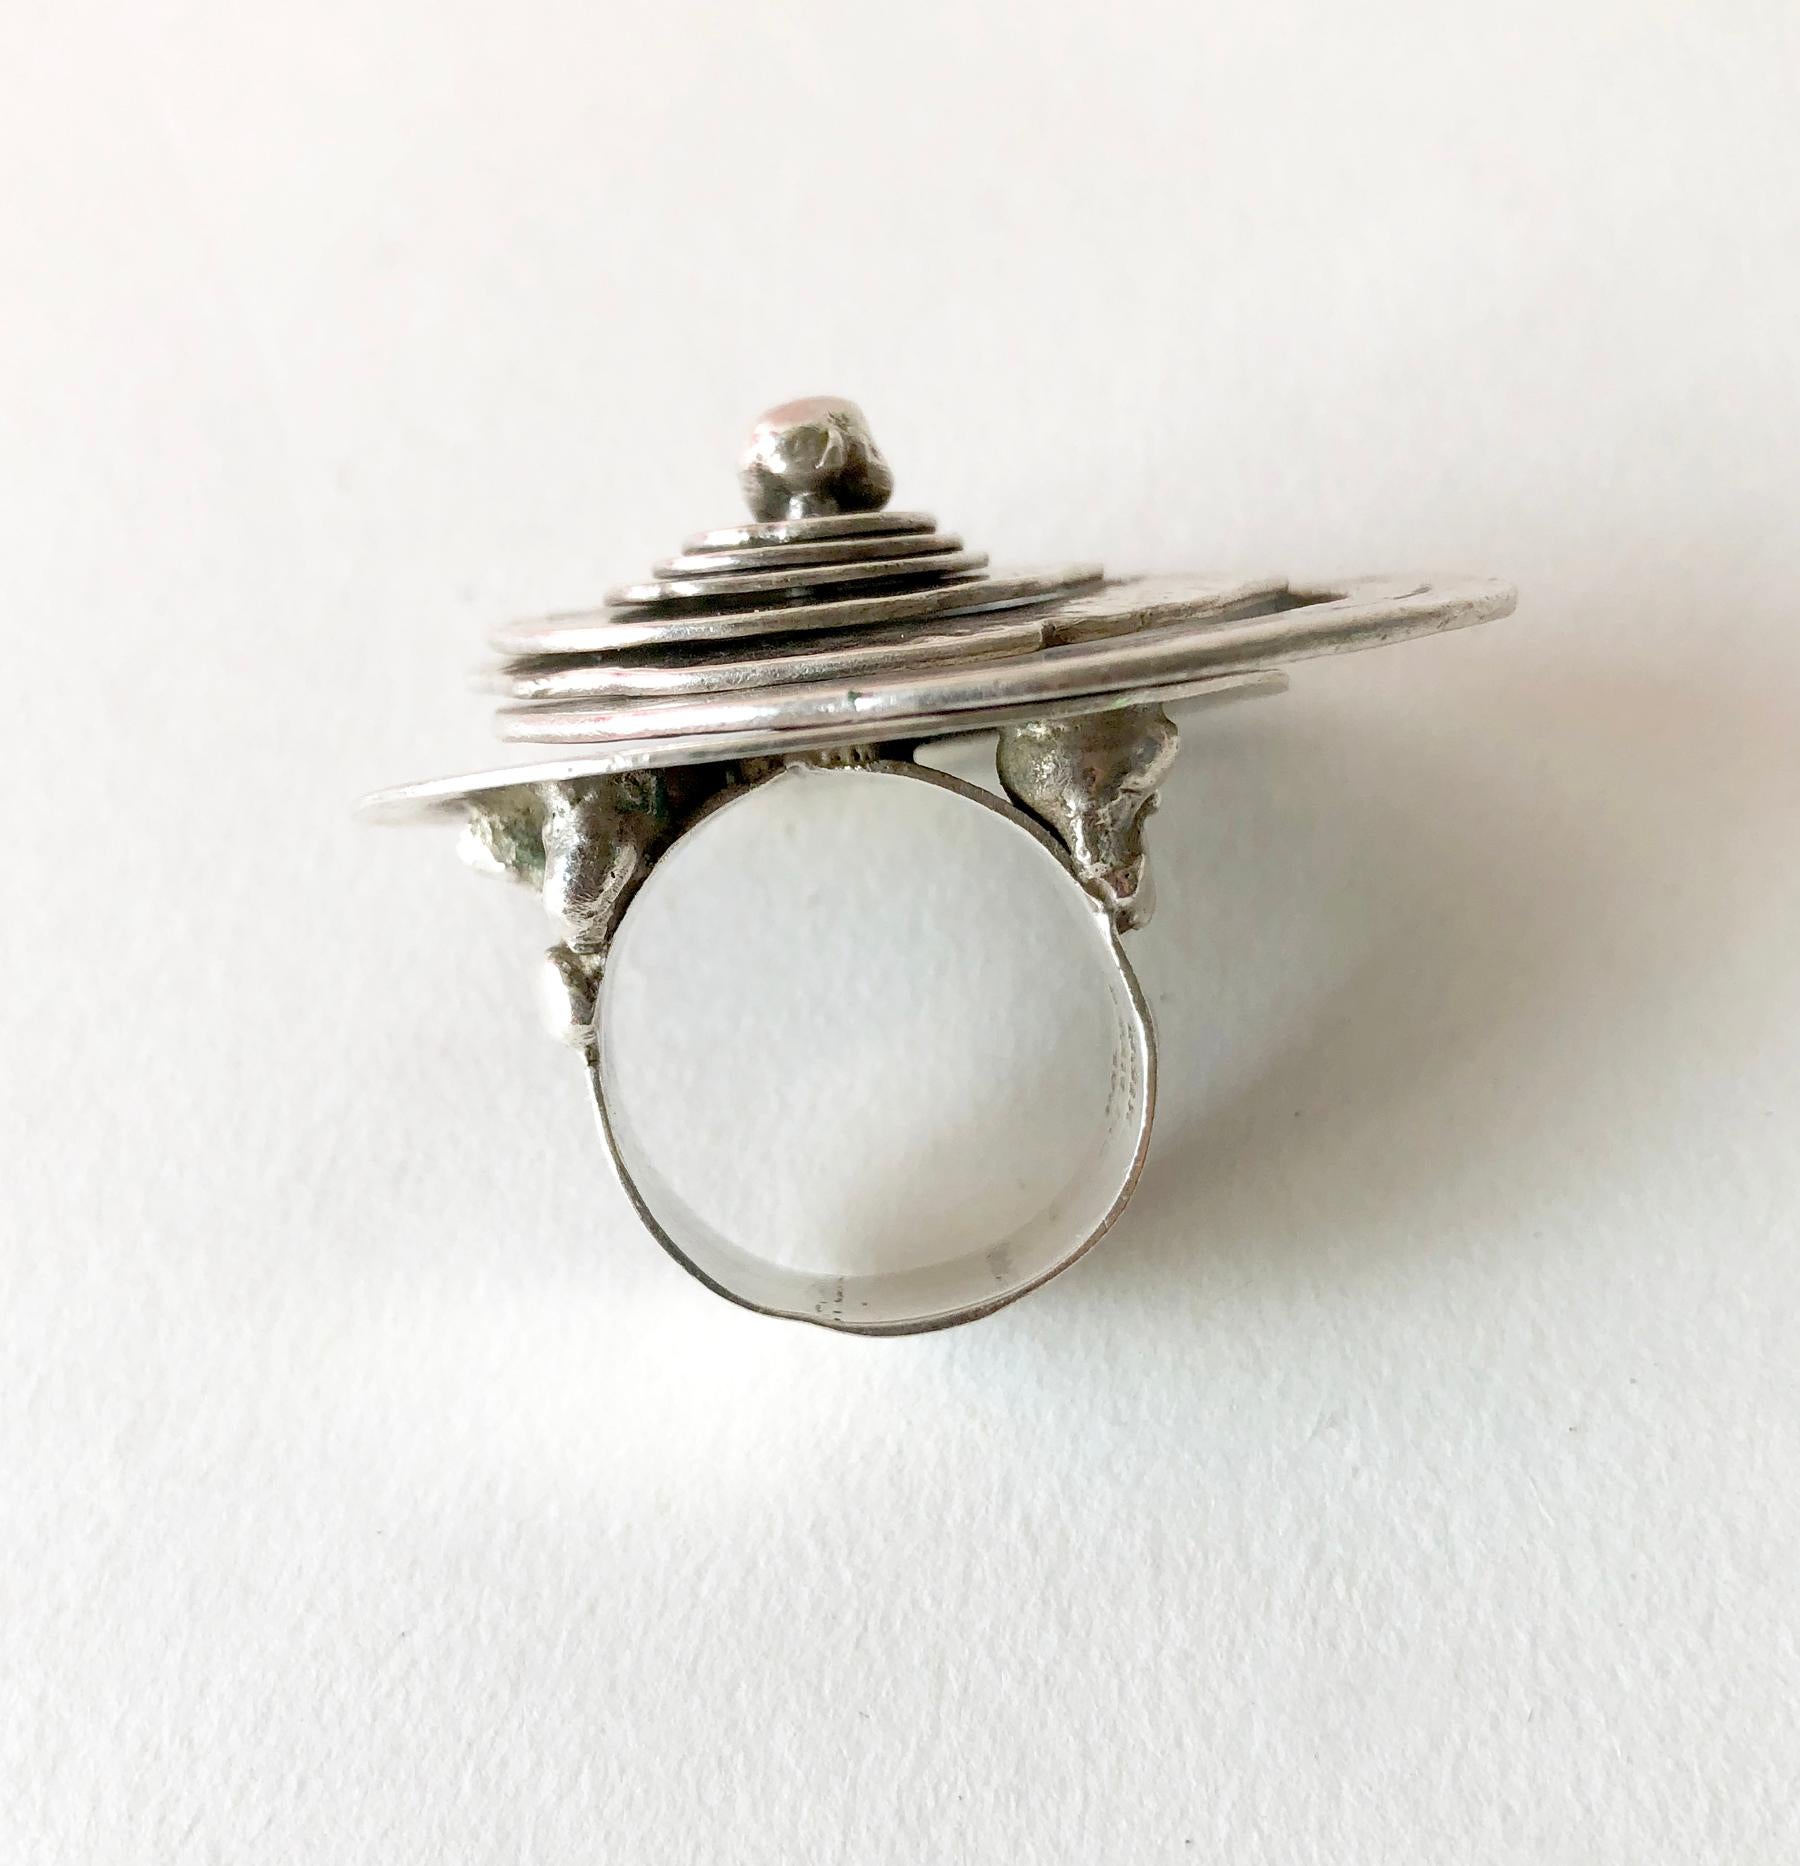 Artisan Pal Kepenyes Silver Plate Spiraling Kinetic Modernist Ring